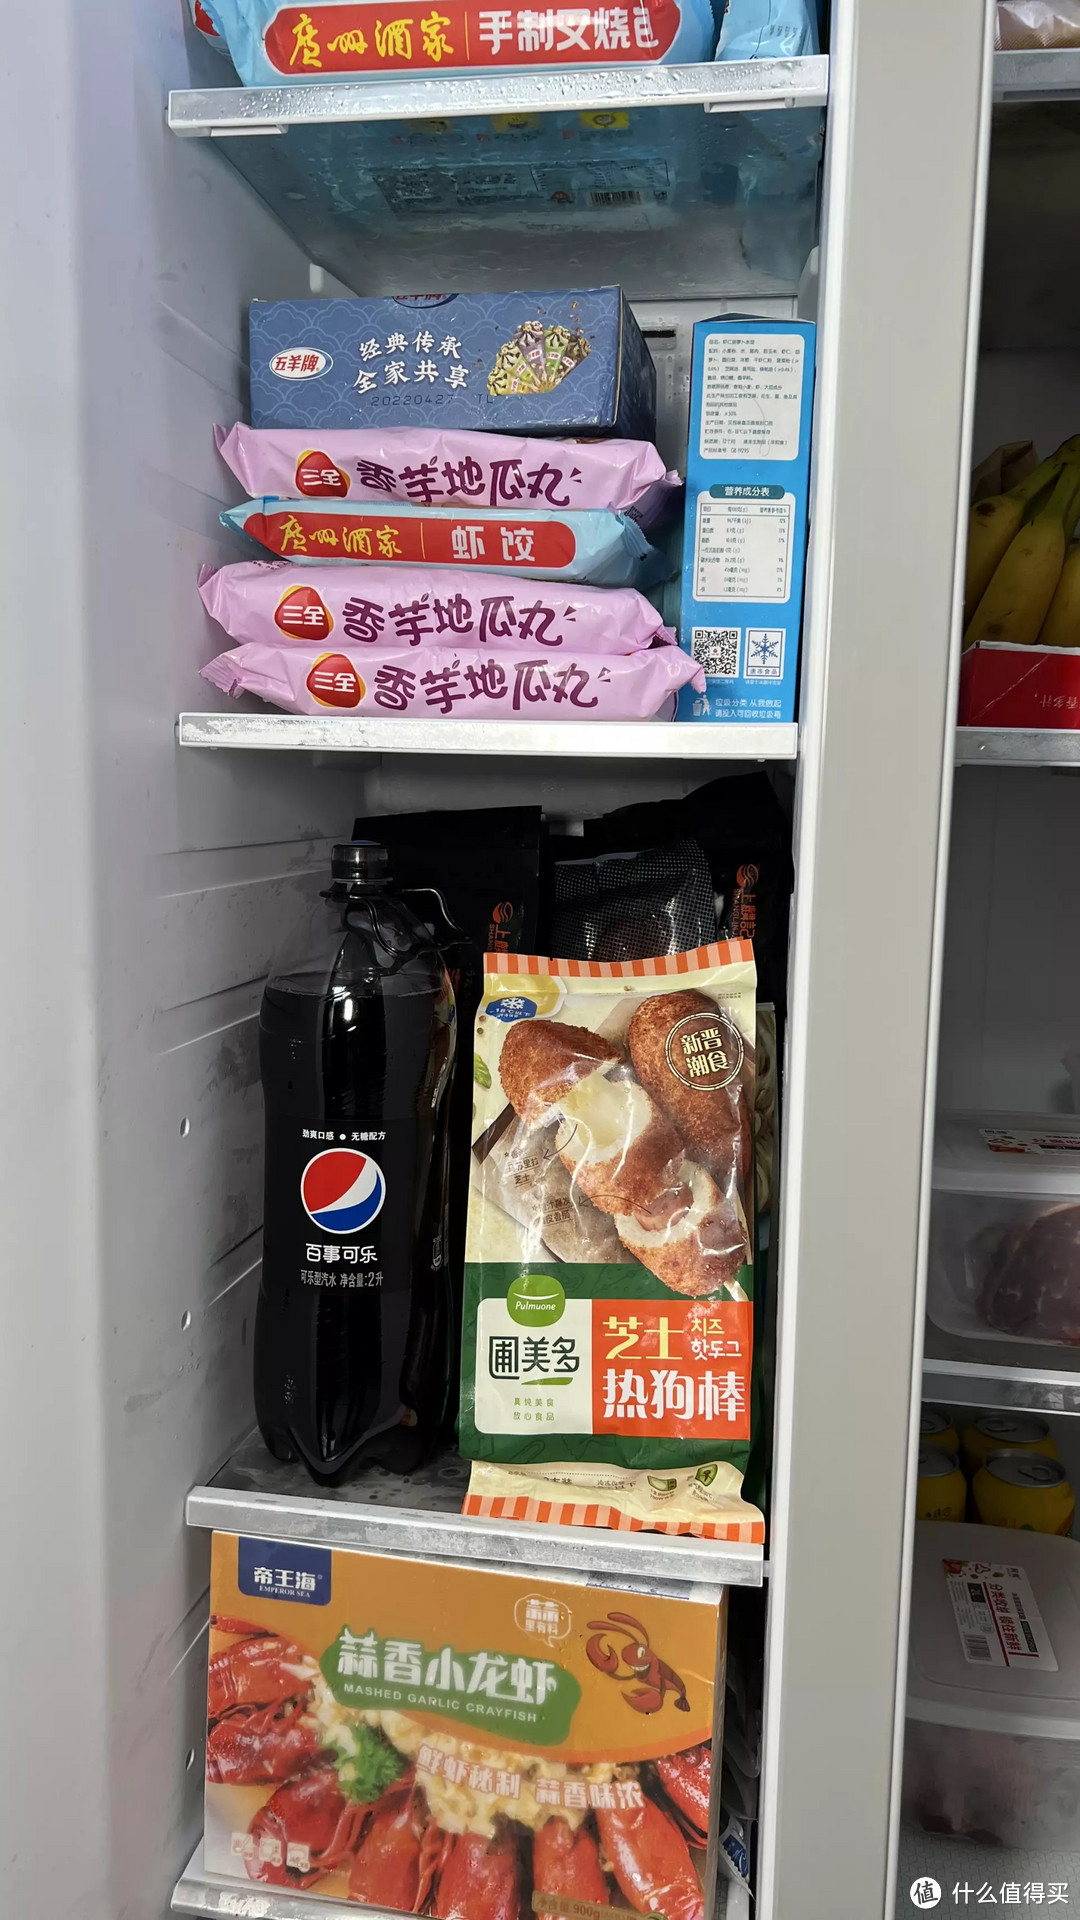 超大冰箱的快乐！满满的幸福感，云米AI大屏冰箱640L